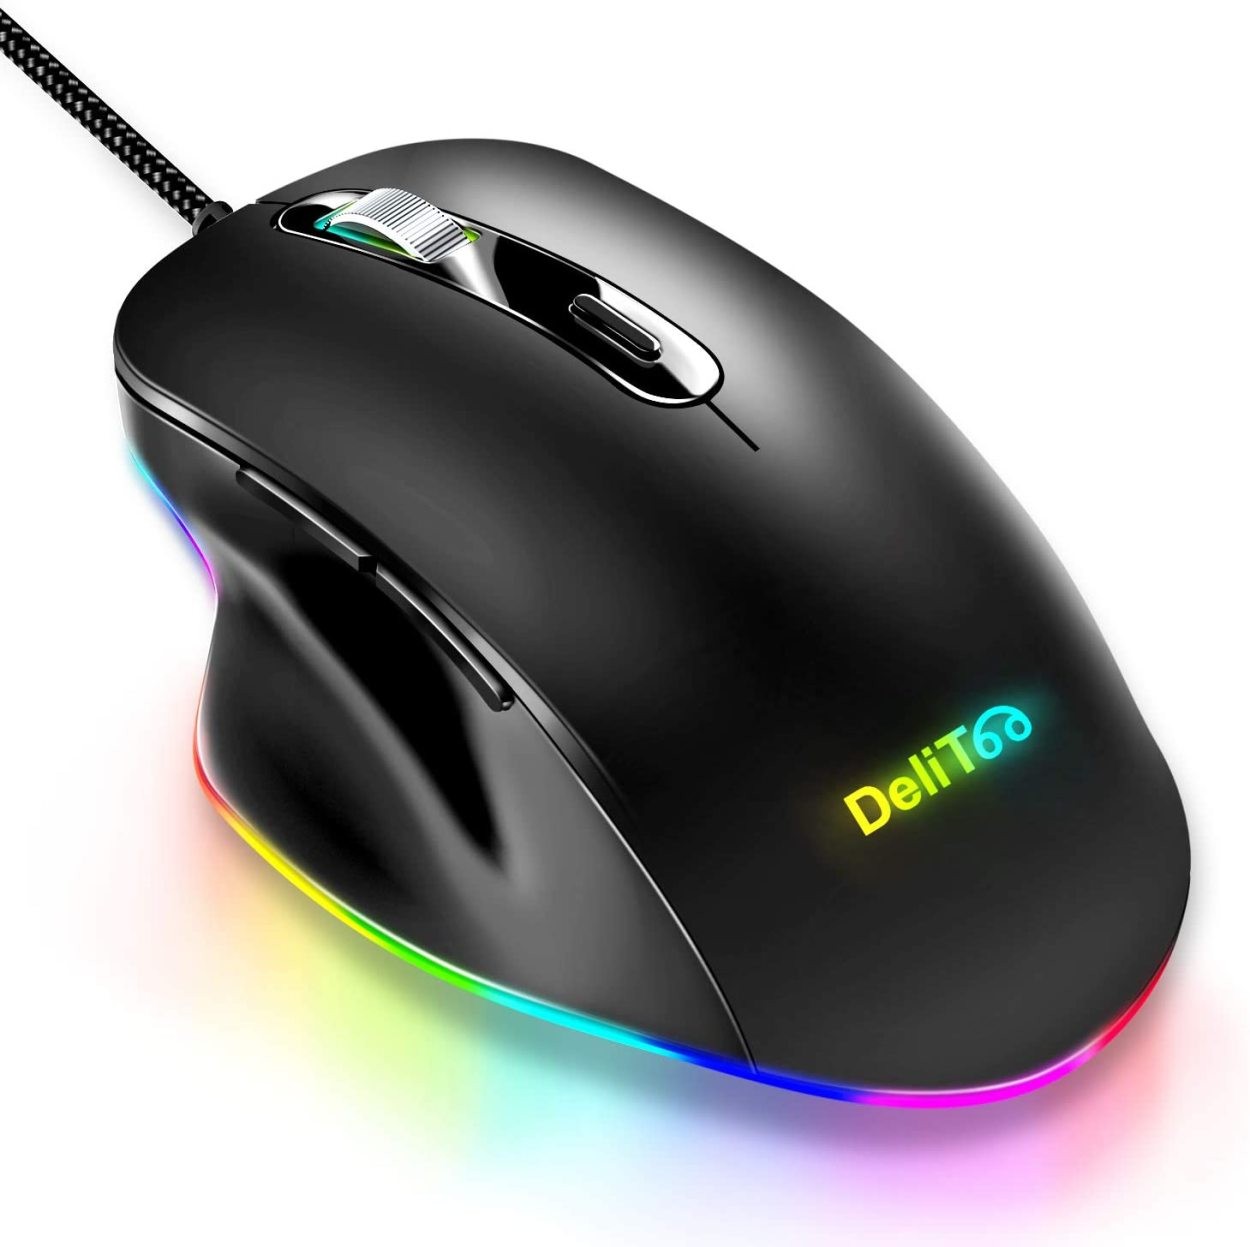 マウス ゲーミングマウス usb 有線マウス 光学式 高精度 4段階DPI切替 6ボタン LEDバックライト ゲームマウス ps4 FPS PUBG  荒野行動 PC 静音(B1A704SBHe)